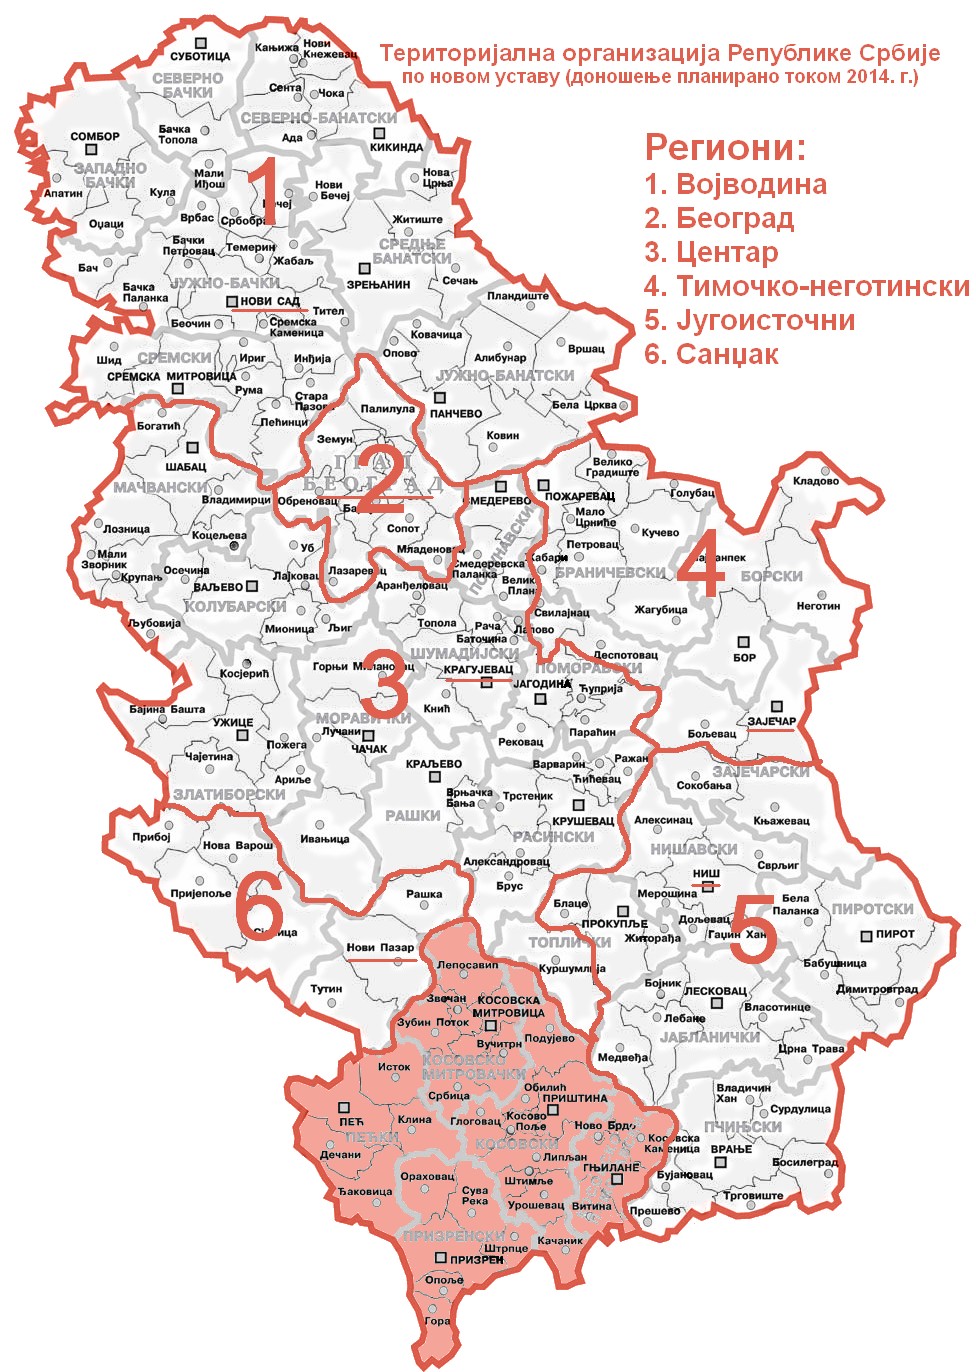 Територијална организација Републике Србије по новом Уставу (планиран за 2014.)